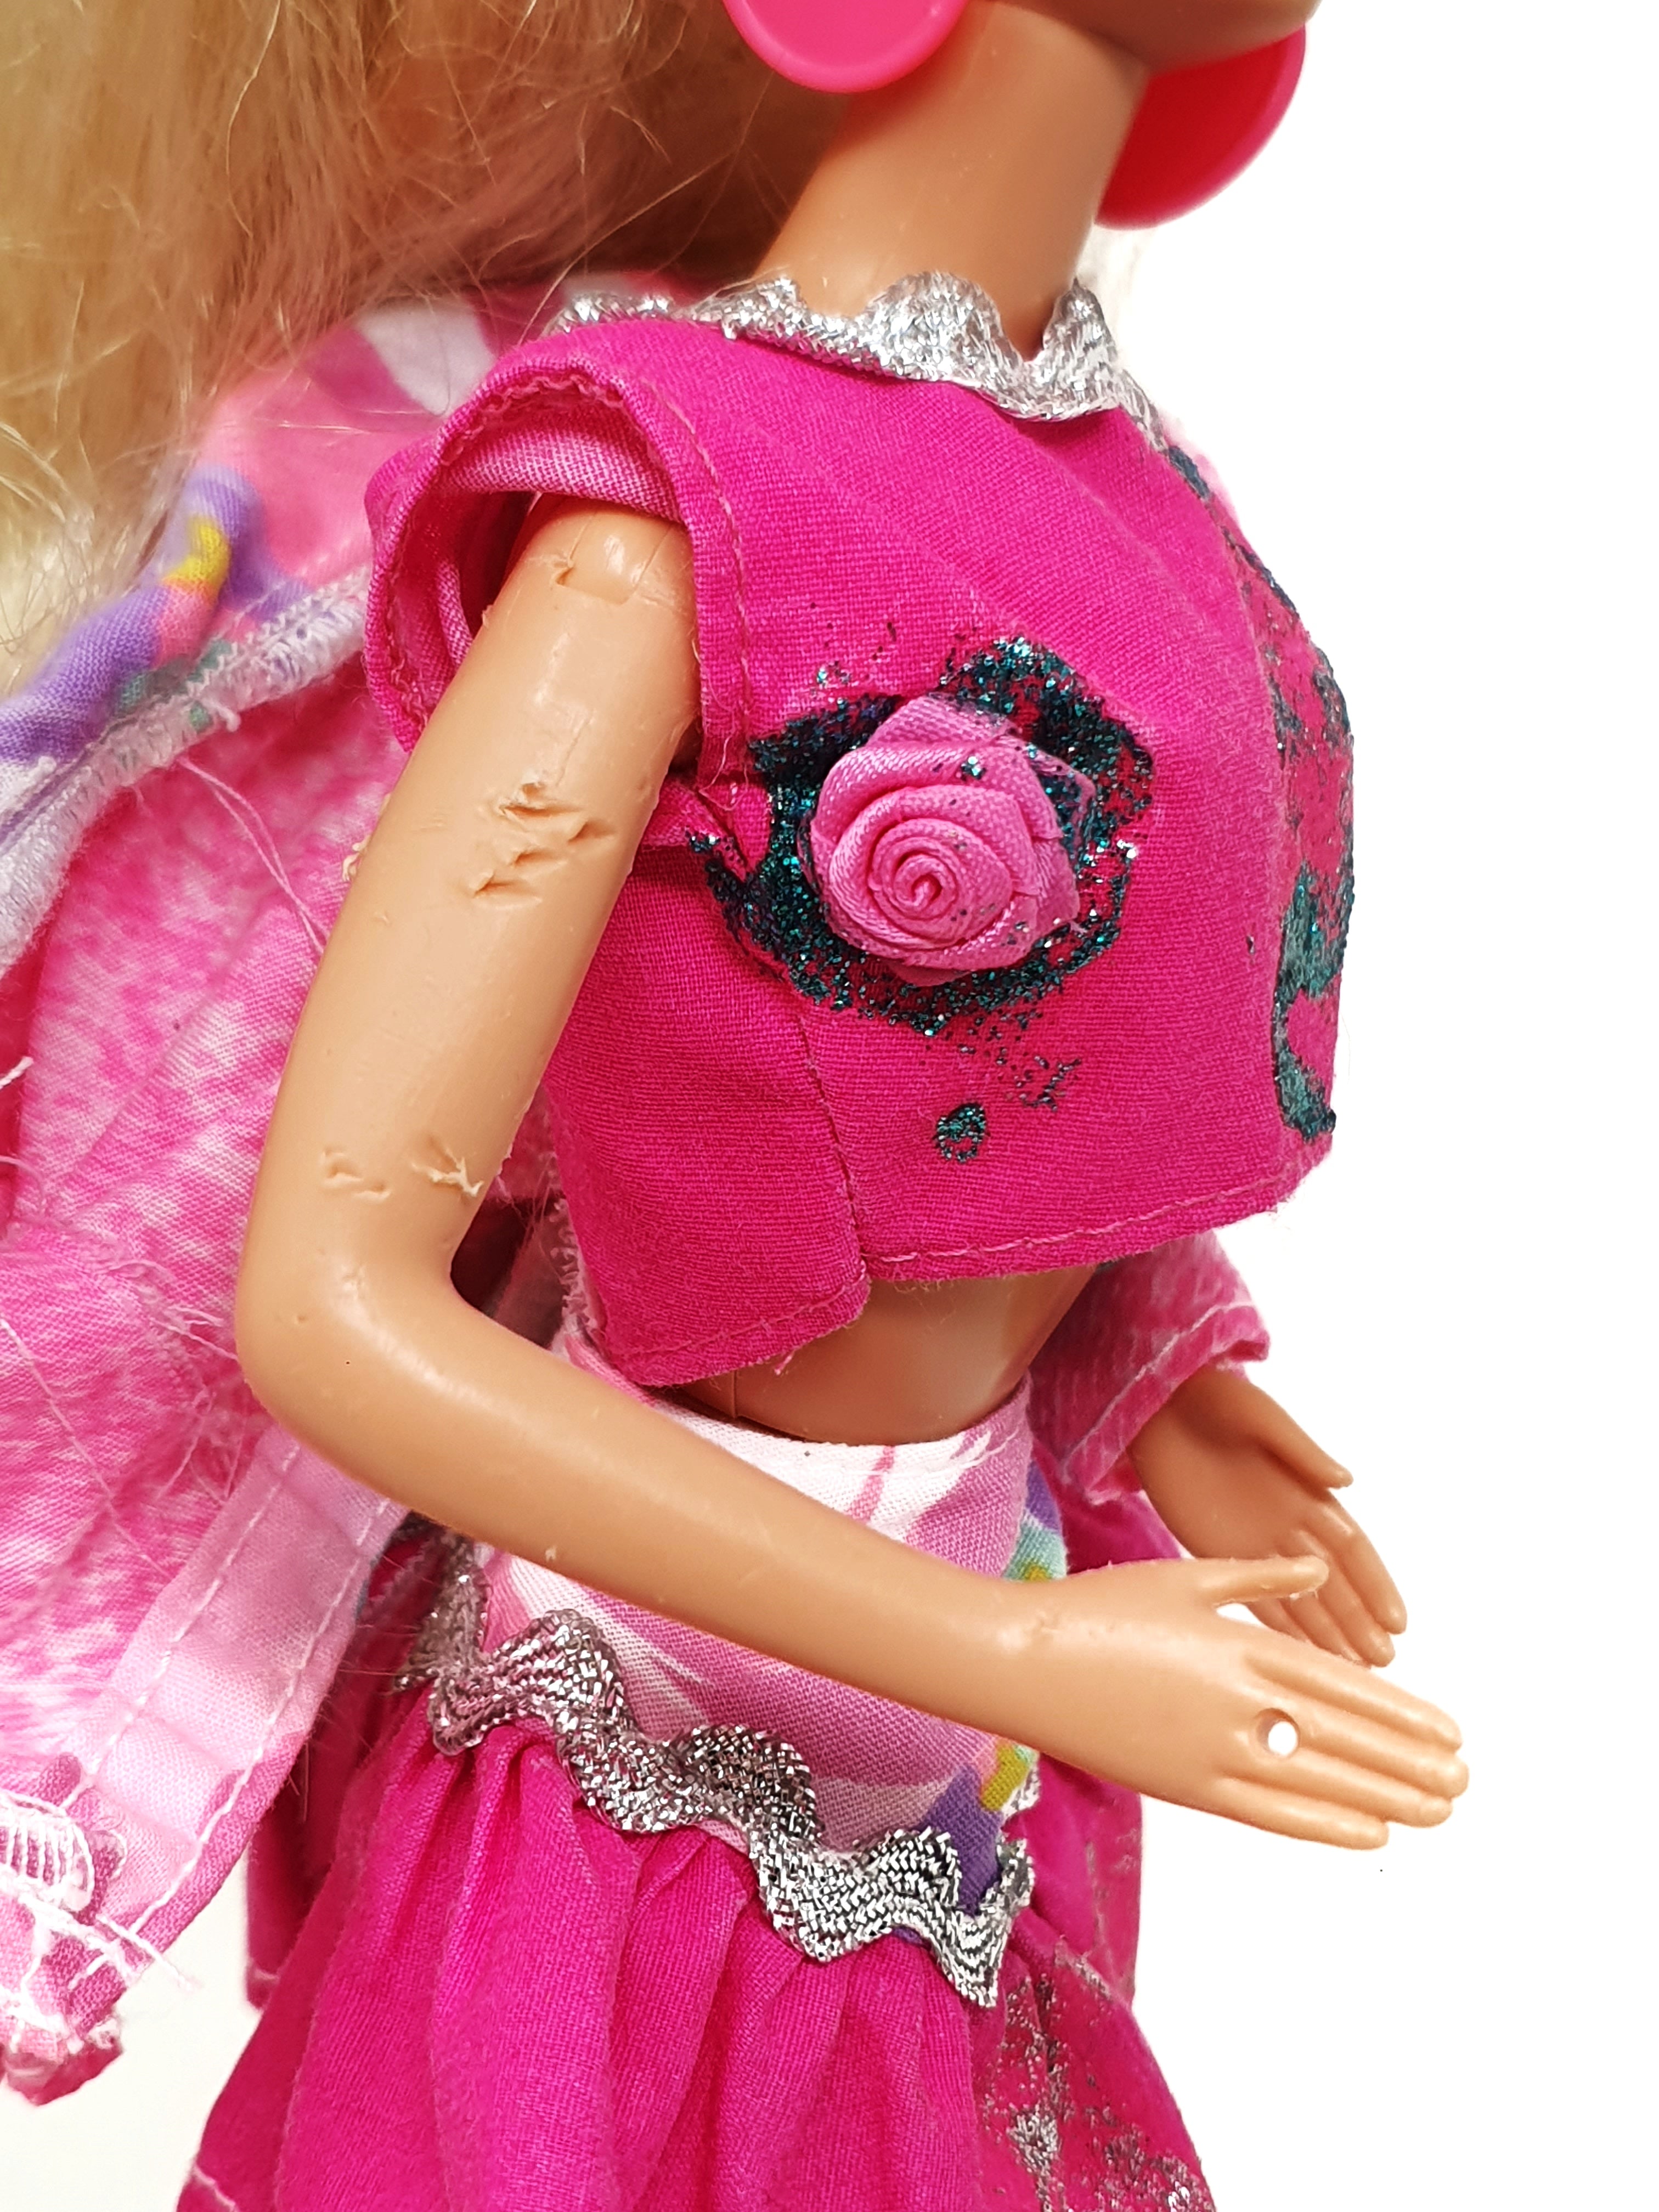 Barbie Paint n' Dazzle (Sin caja), 1993 Mattel